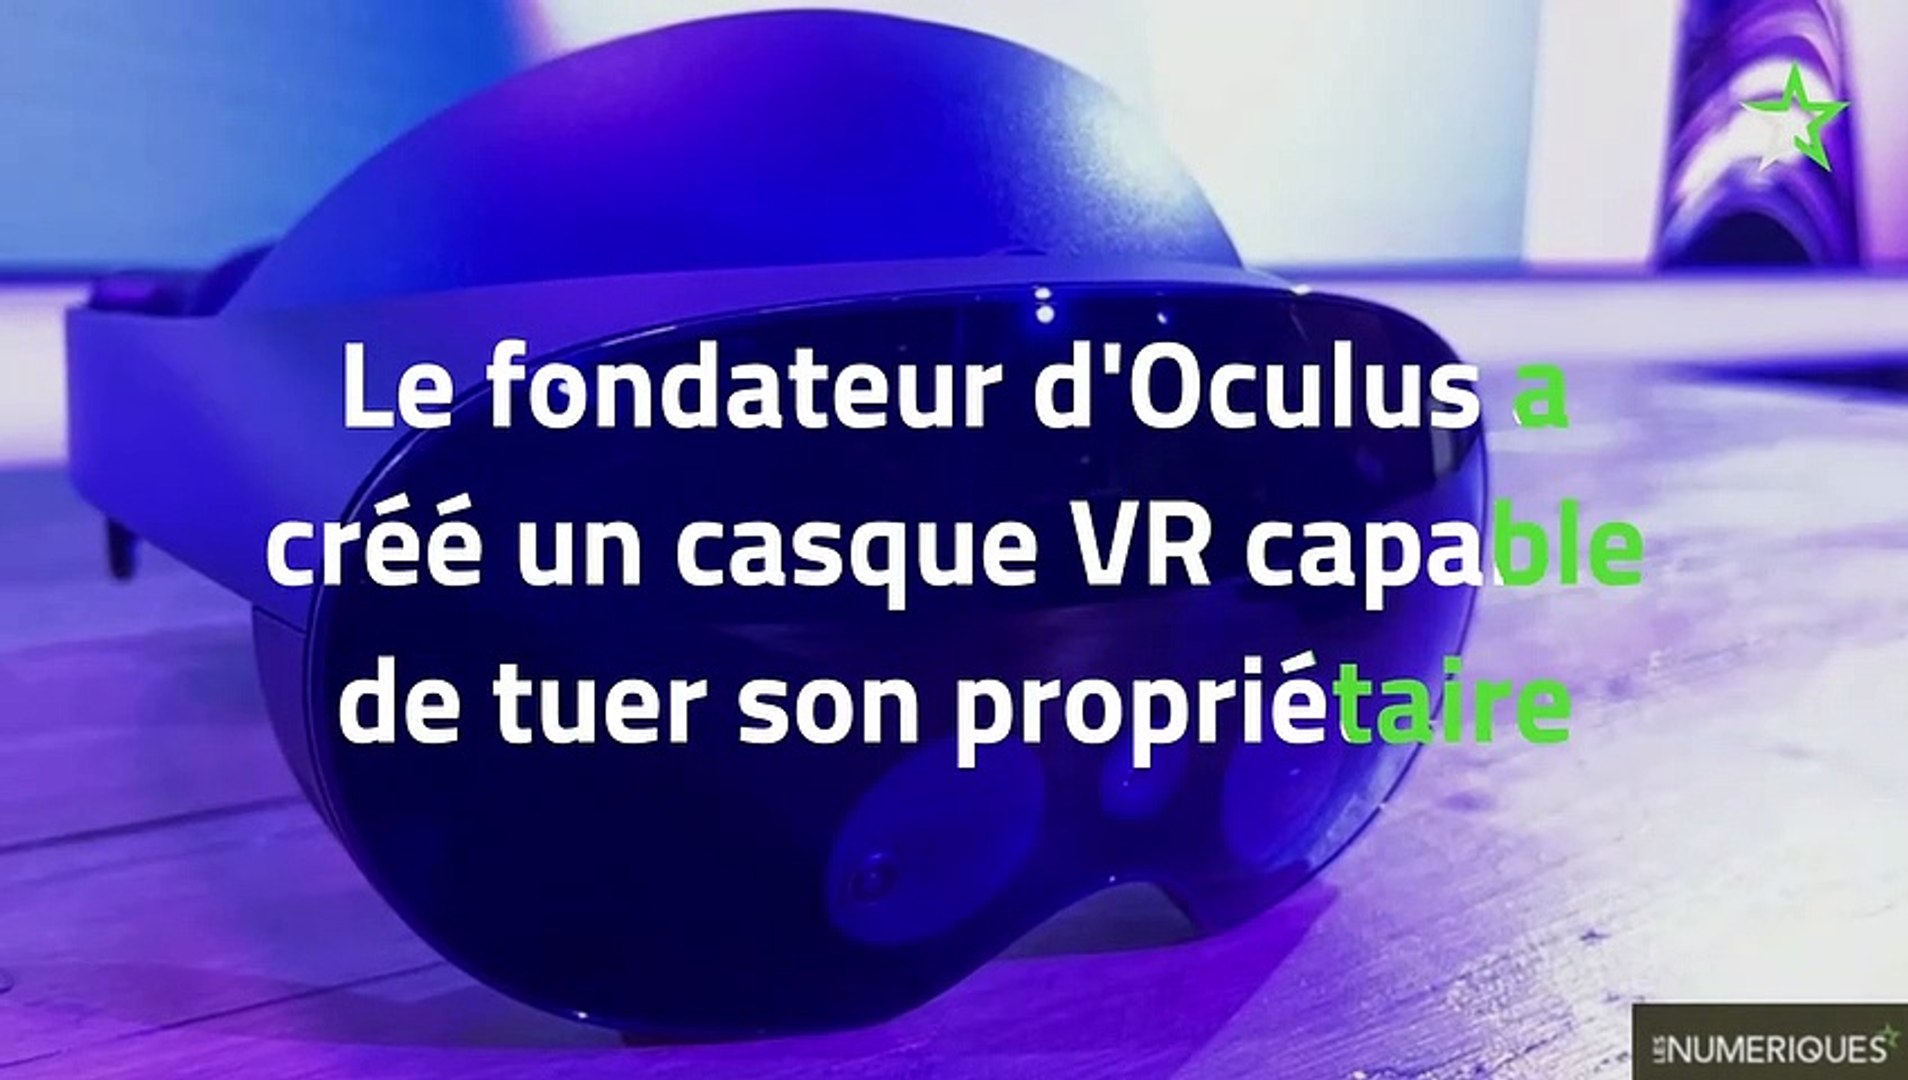 Le fondateur d'Oculus a créé un casque VR capable de tuer son propriétaire  - Vidéo Dailymotion